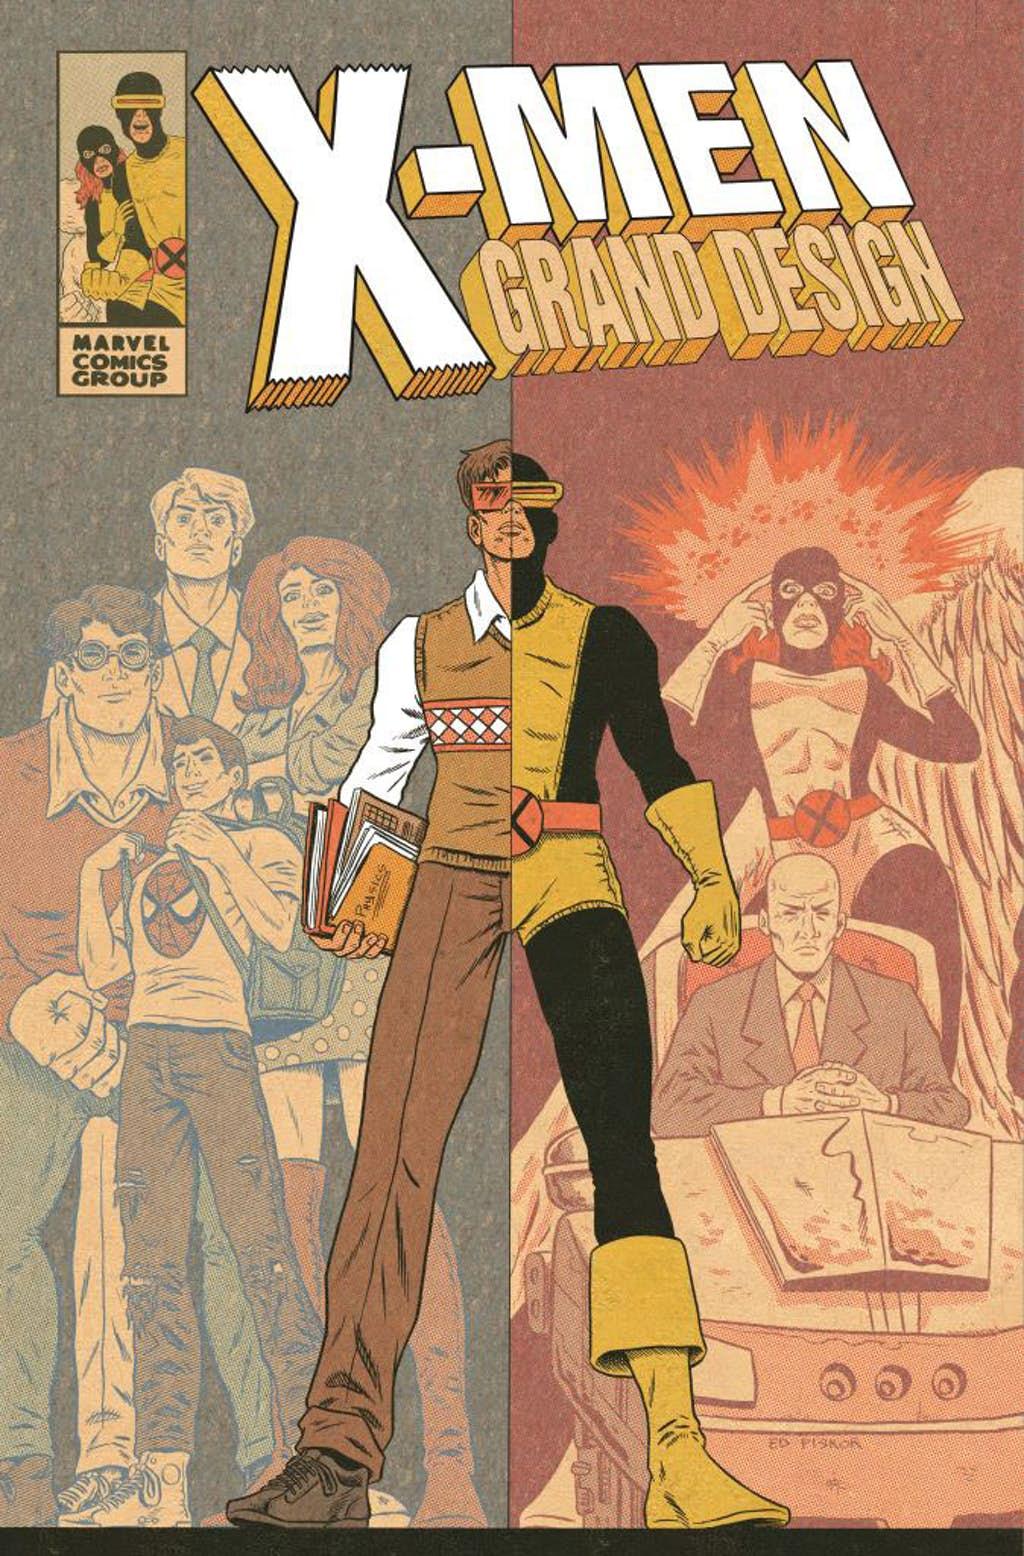 X-Men: Grand Design Vol. 1 #1